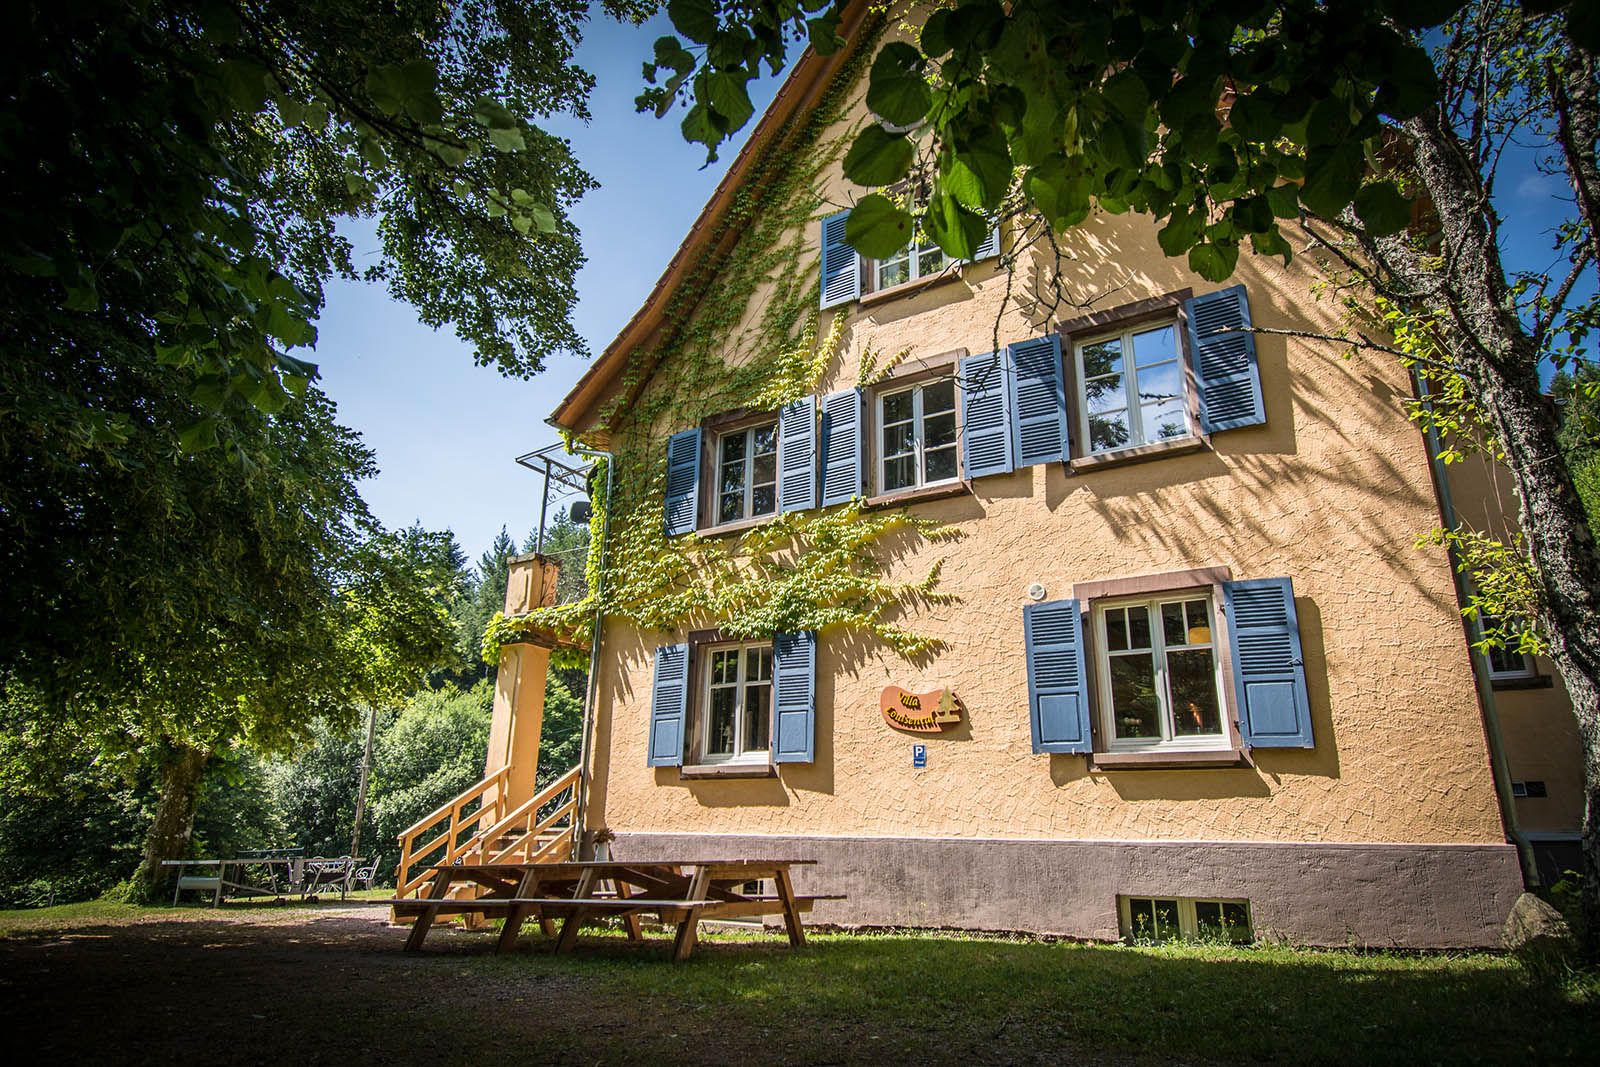 Villa Louisental - erstklassige Gruppenunterkunft in Le Hohwald im Elsass - Familientreffen, Wochenende unter Freunden, Kurse und Seminare